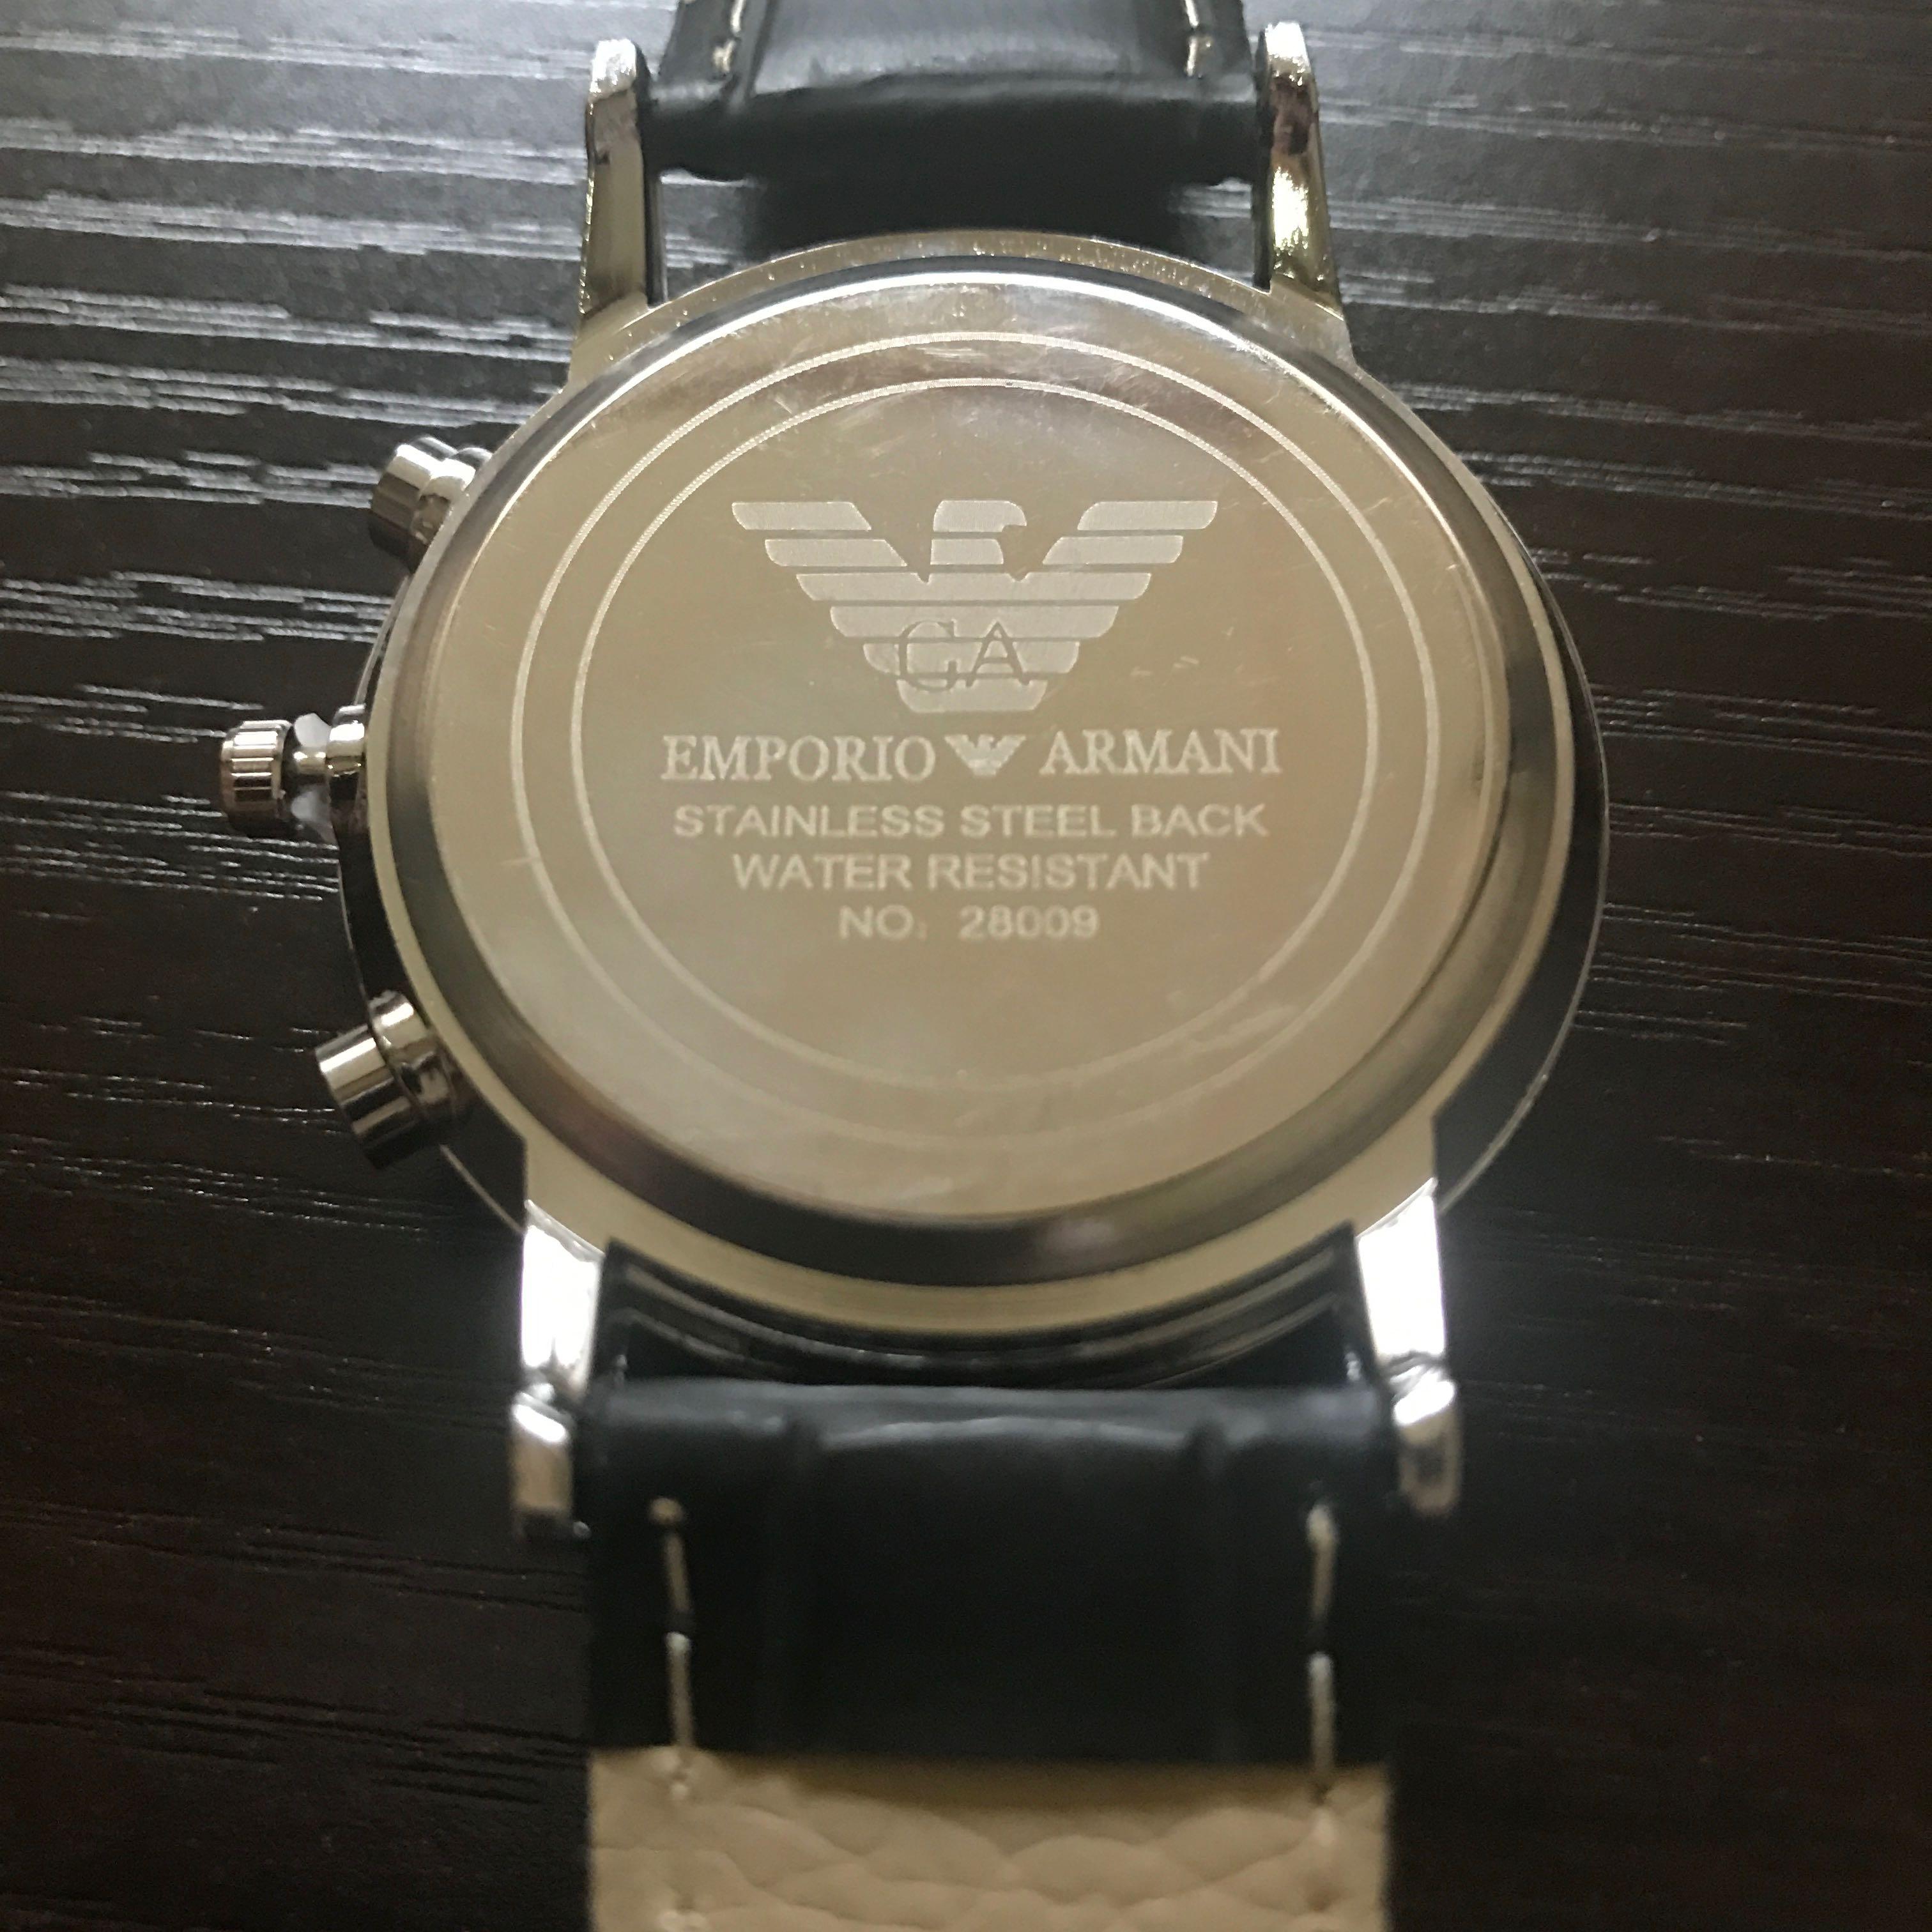 emporio armani watch 28009